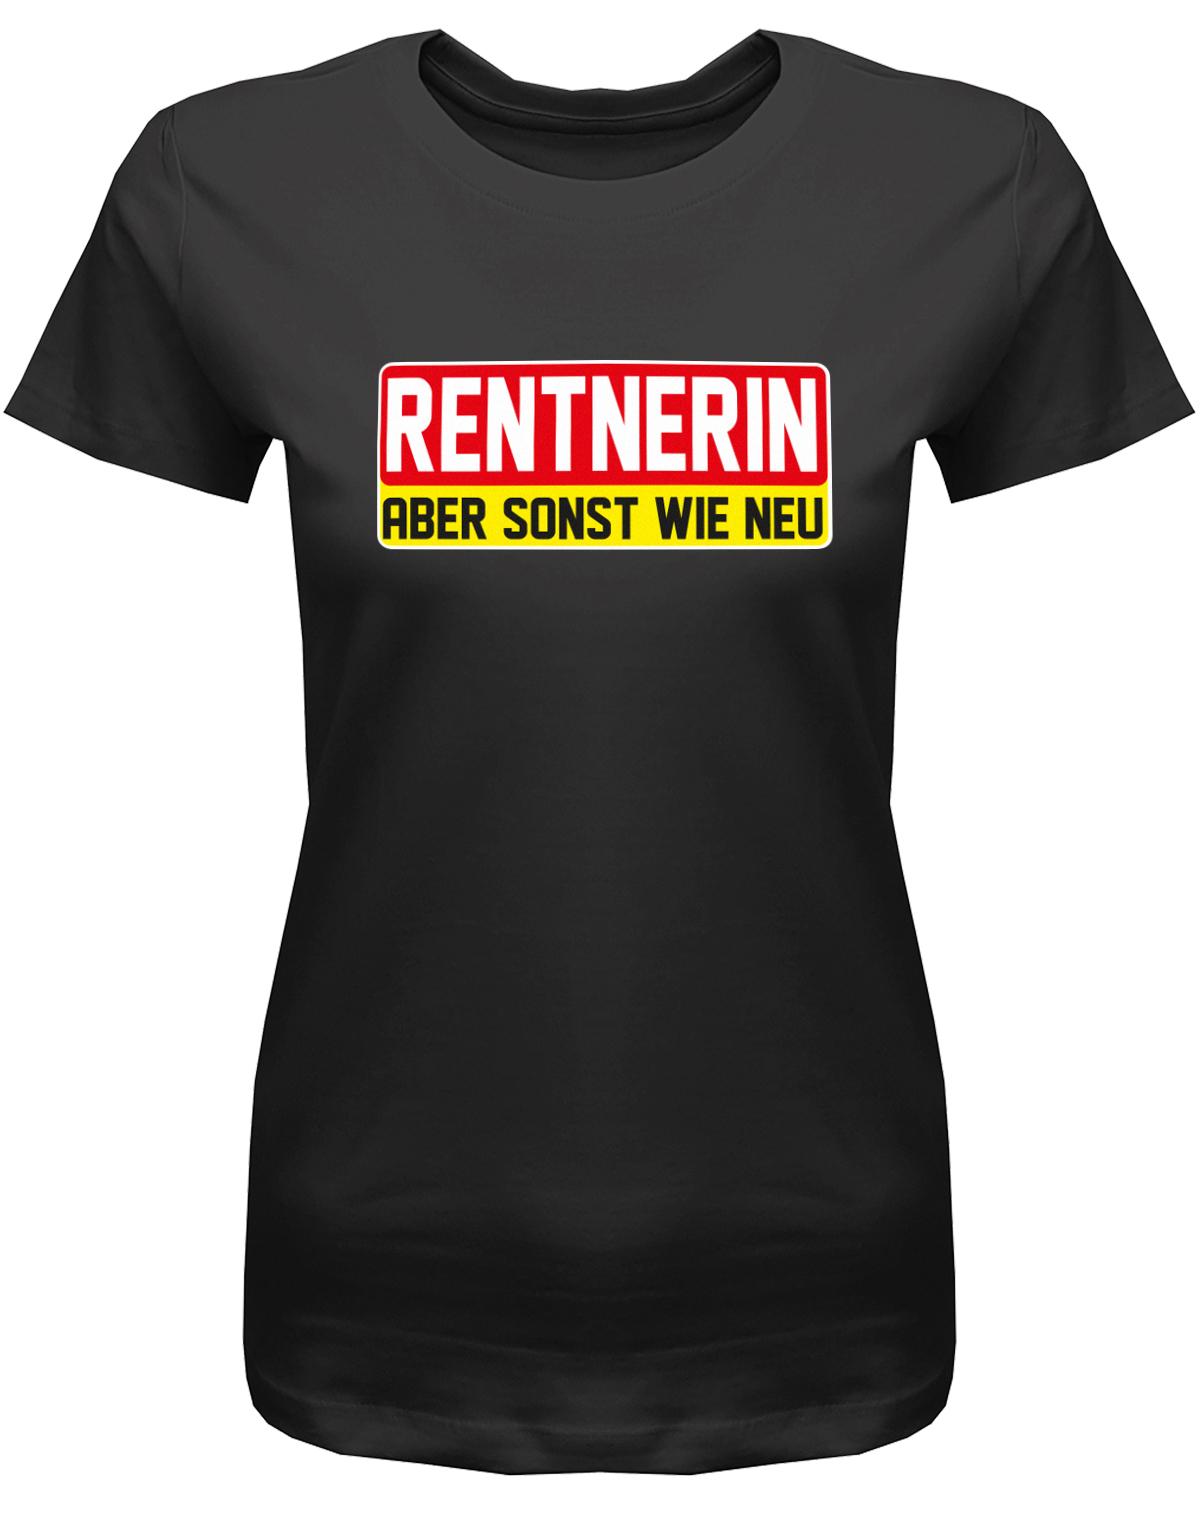 Rentnerin-aber-sonst-wie-neu-Damen-rente-Shirt-Schwarz